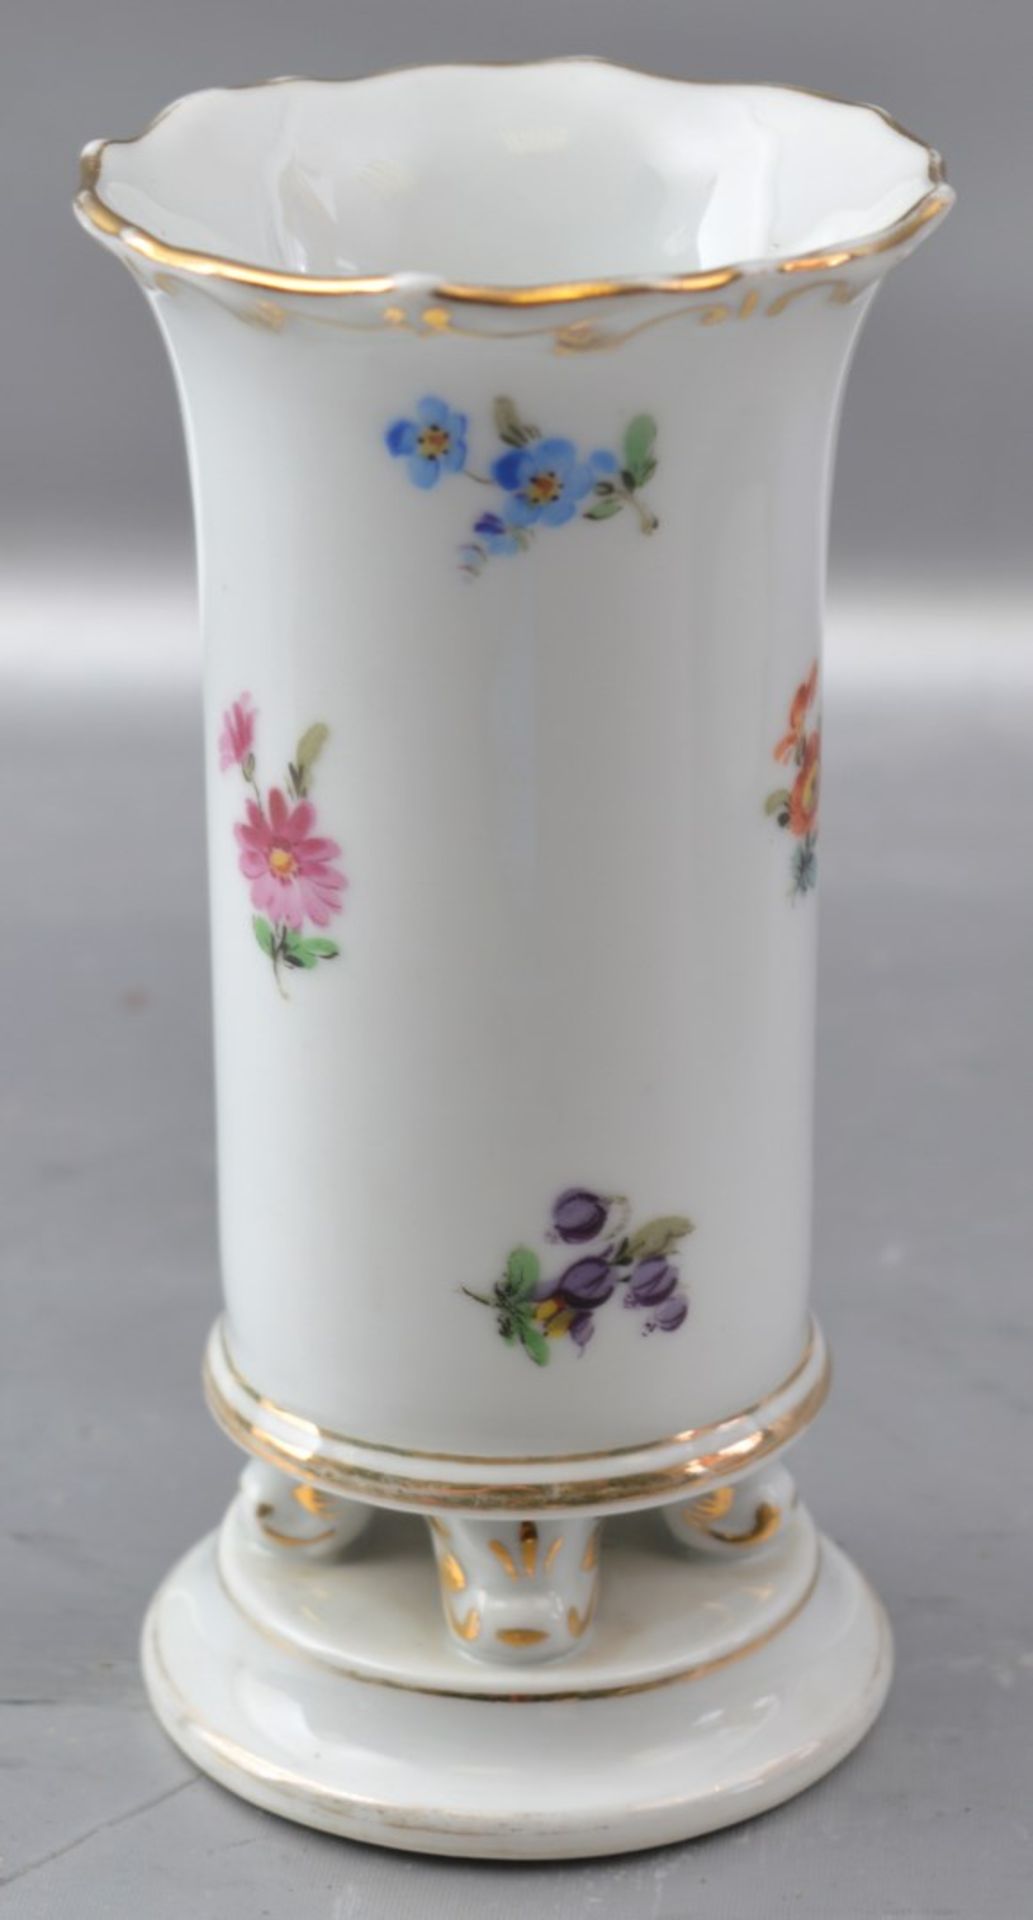 Vase zylindrische Form, runder Sockel, auf vier Füßen stehend, gewellter Rand, Wandung mit bunter